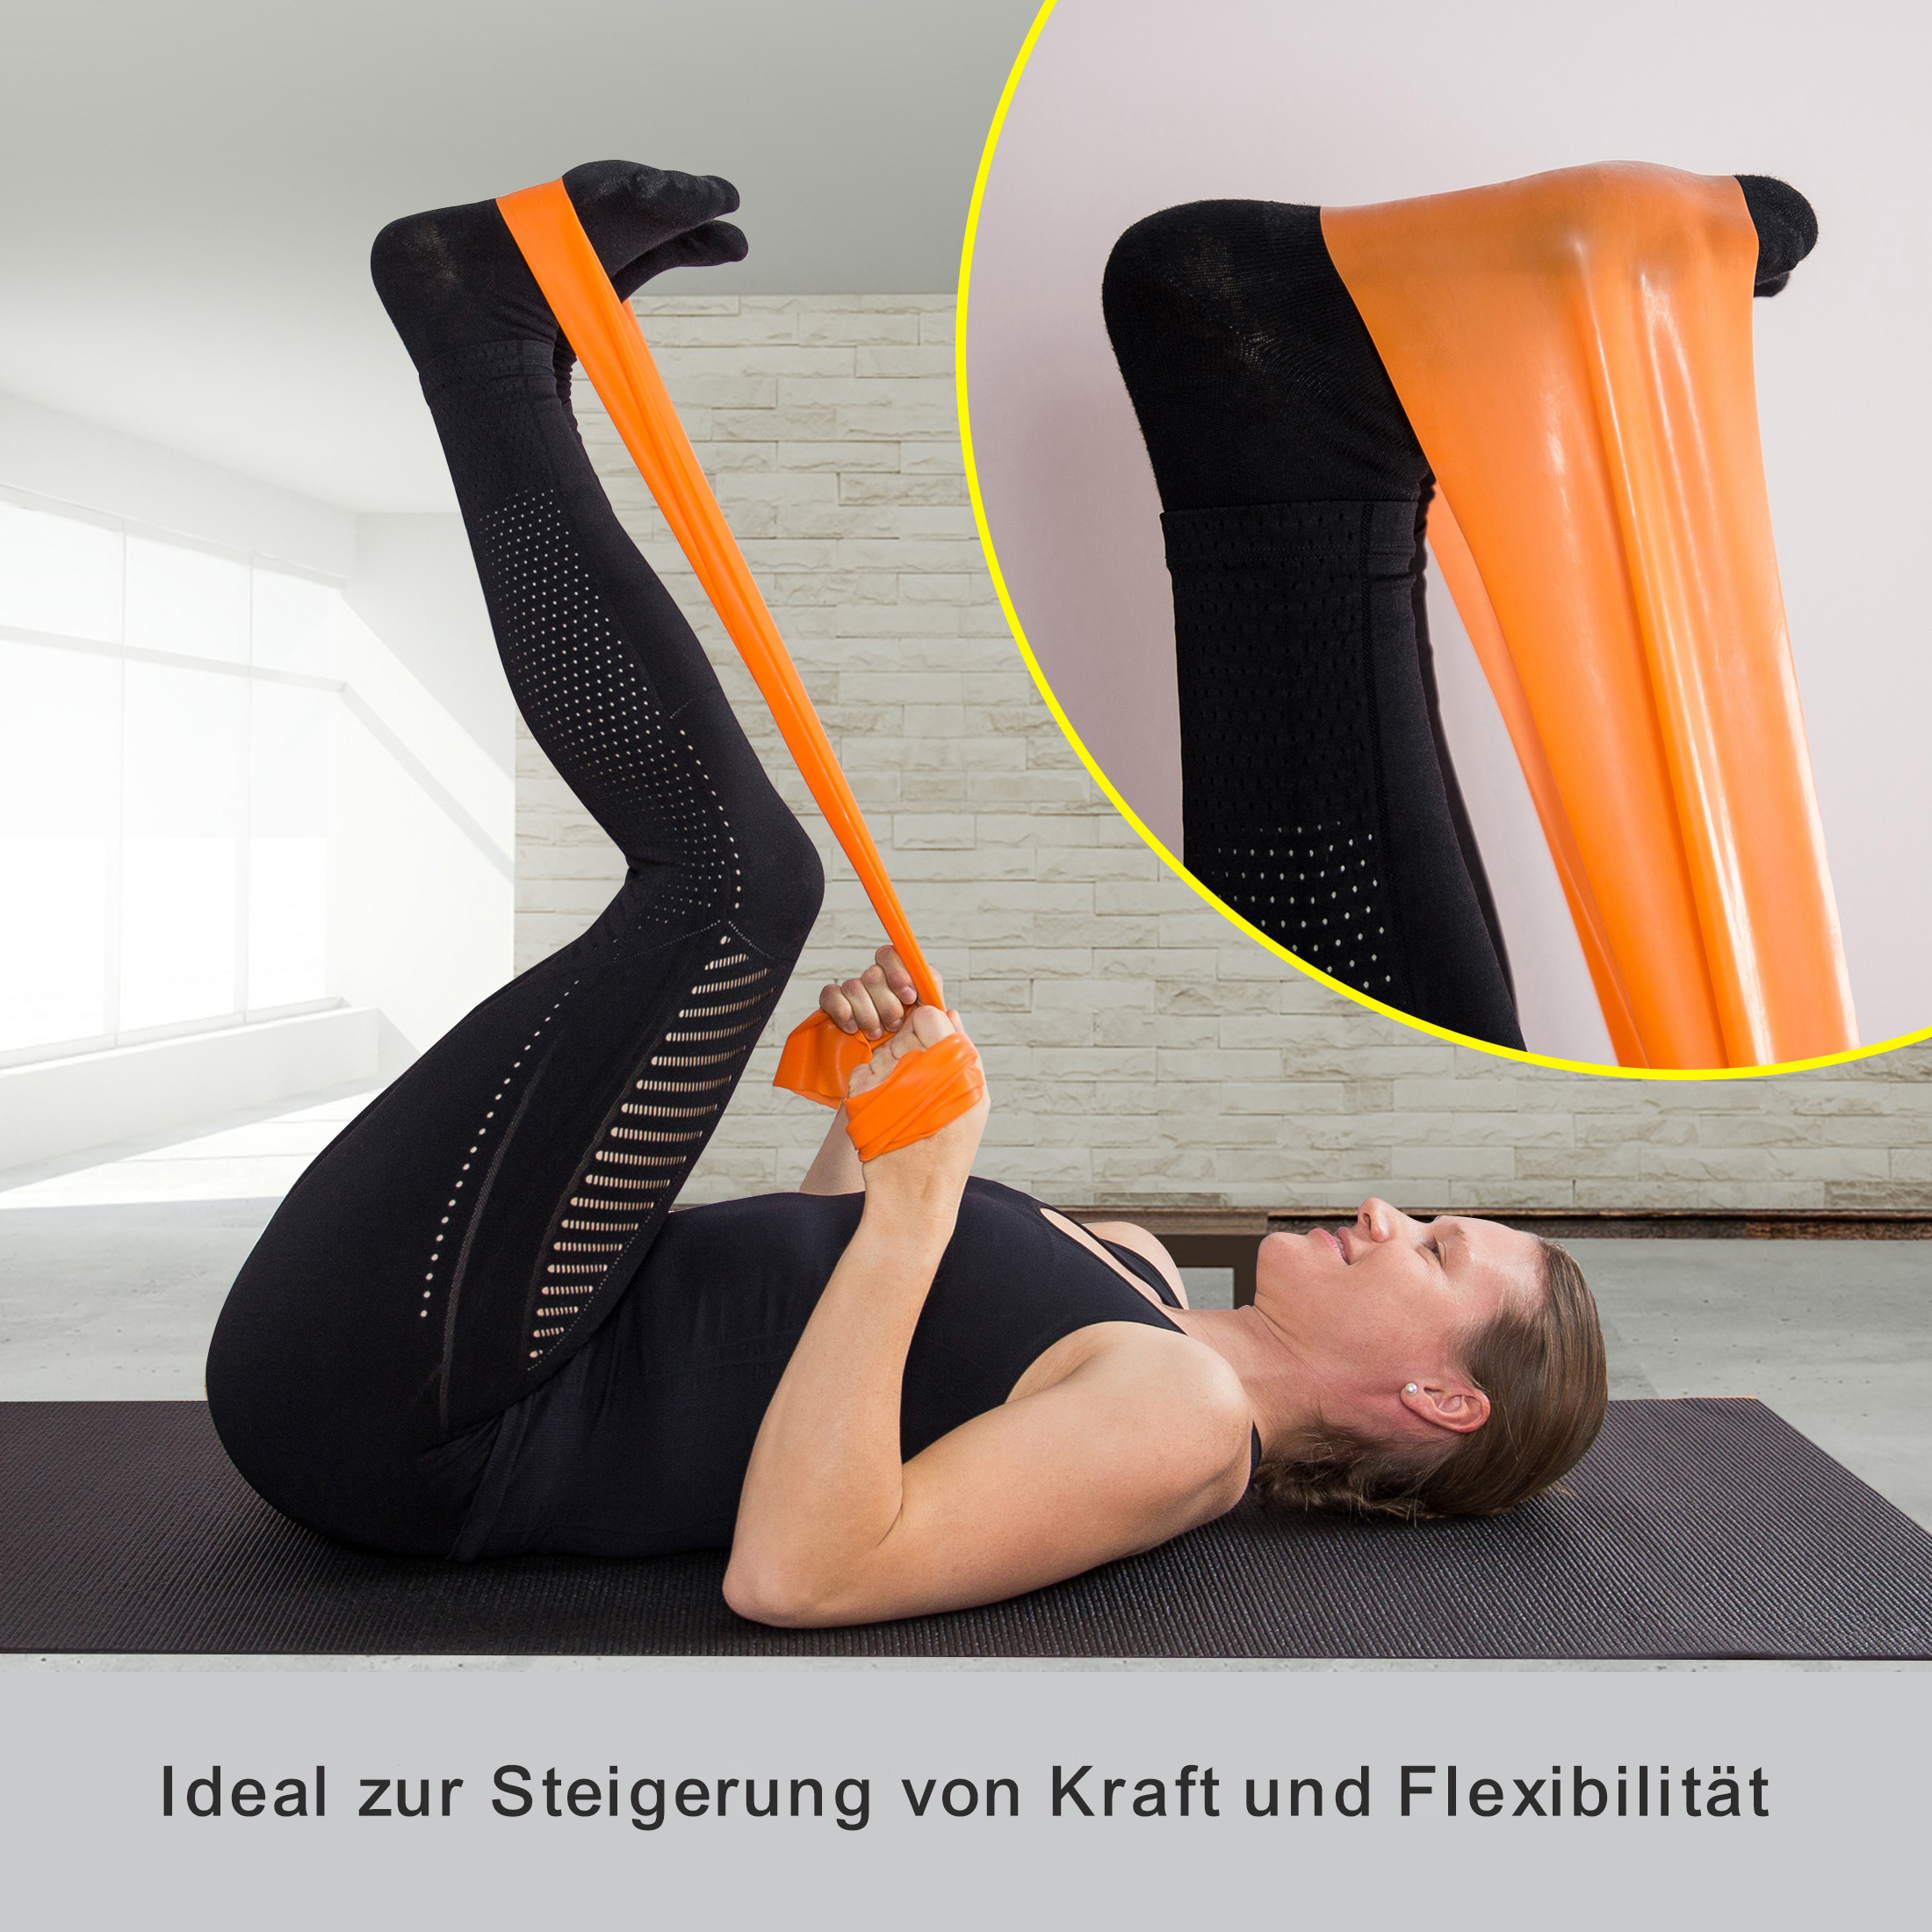 ZOOMYO elastisches Trainingsband Orange Fitnessband unterschiedlichem zuhause Stretchband, Krafttraining mit für Widerstand, Elastische